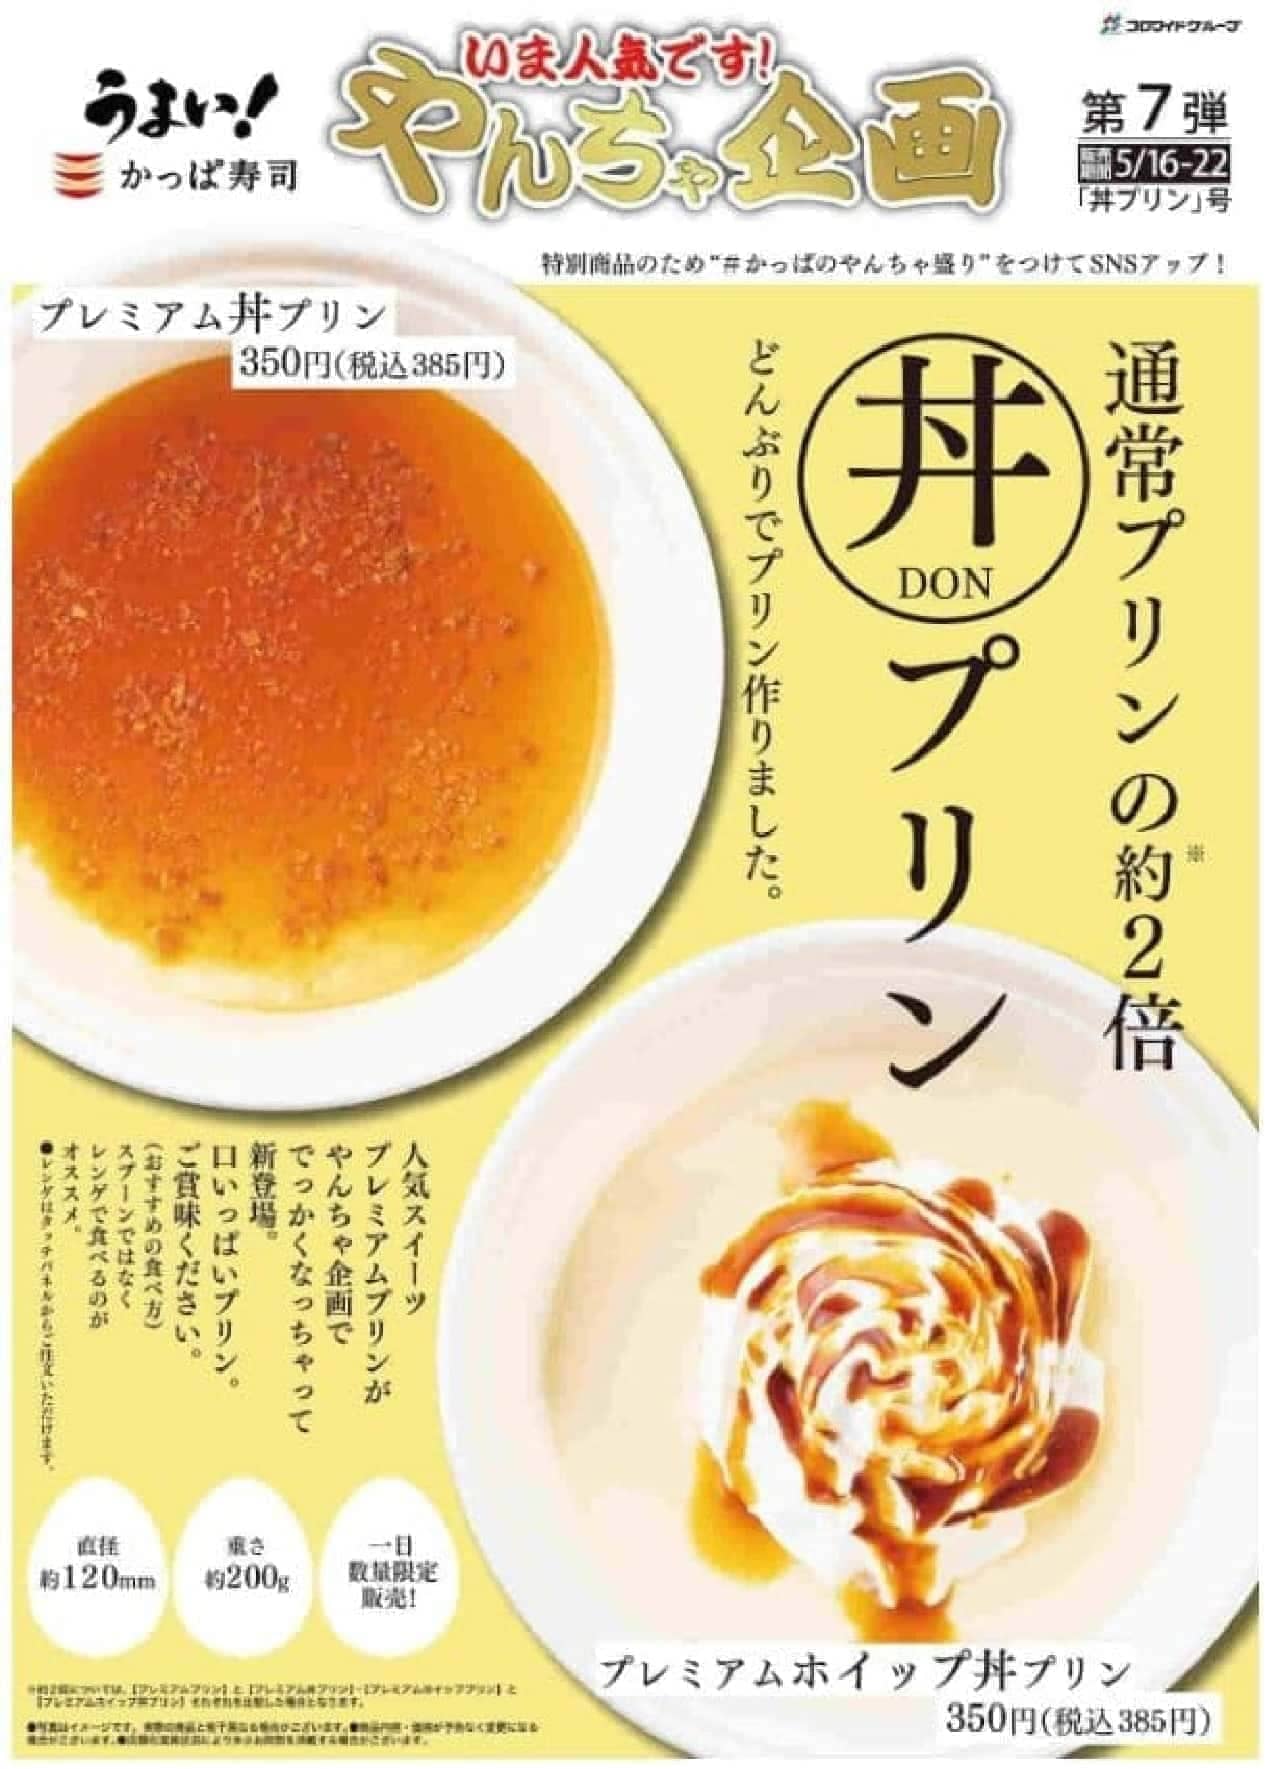 Kappa Sushi "Premium rice bowl pudding